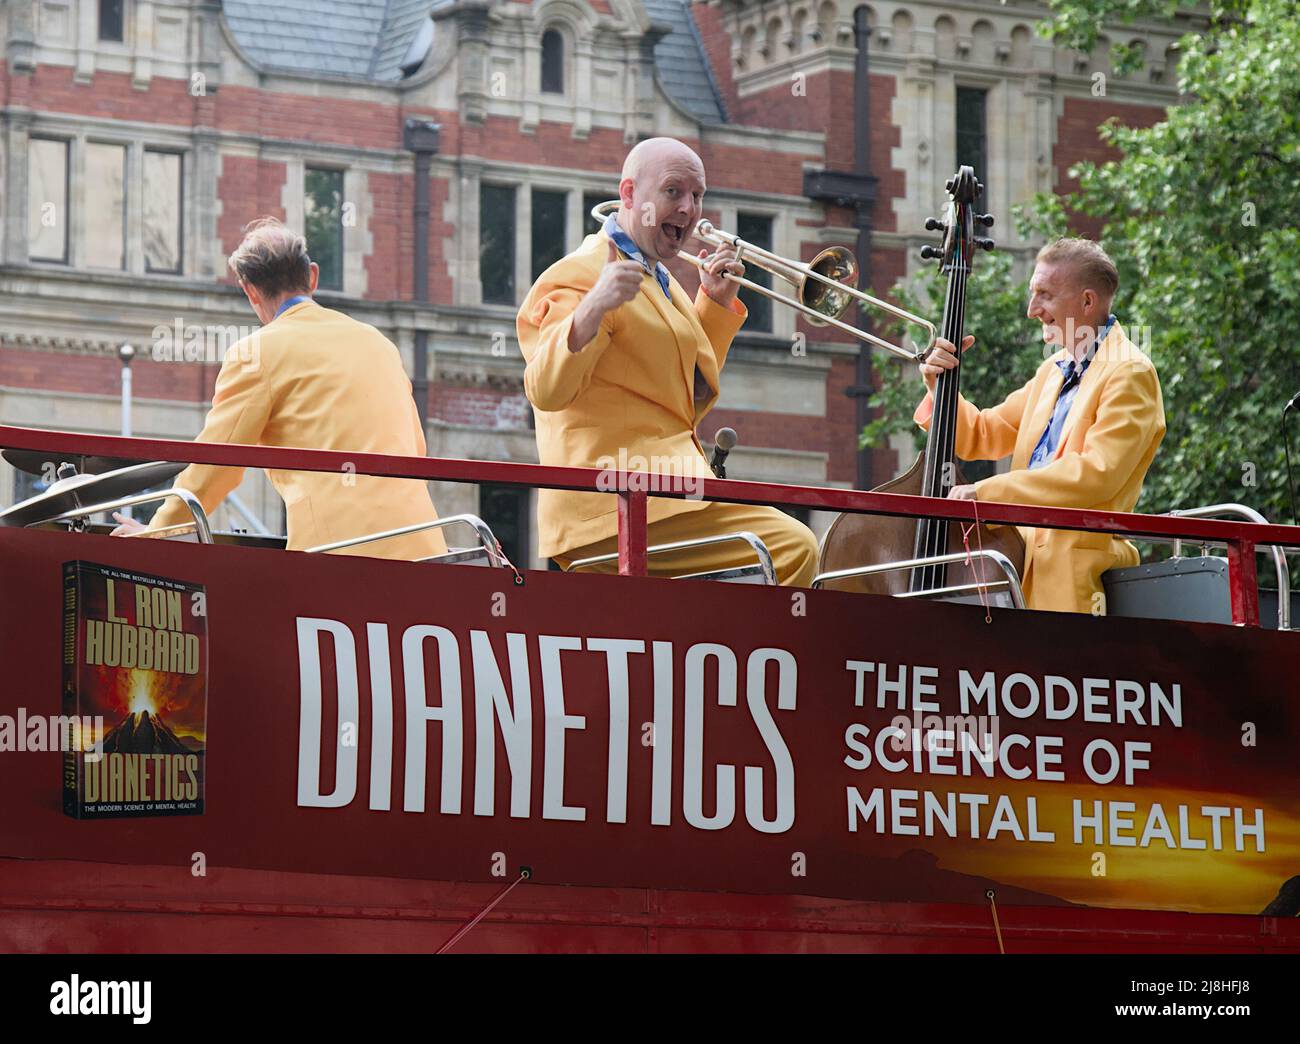 Miembro de una banda de Jazz Swing Giving A Thumbs Up on the Top of an Open Top Red London Bus Advertising Dianetics Mental Health Creado por L. Ron Hubbard Foto de stock